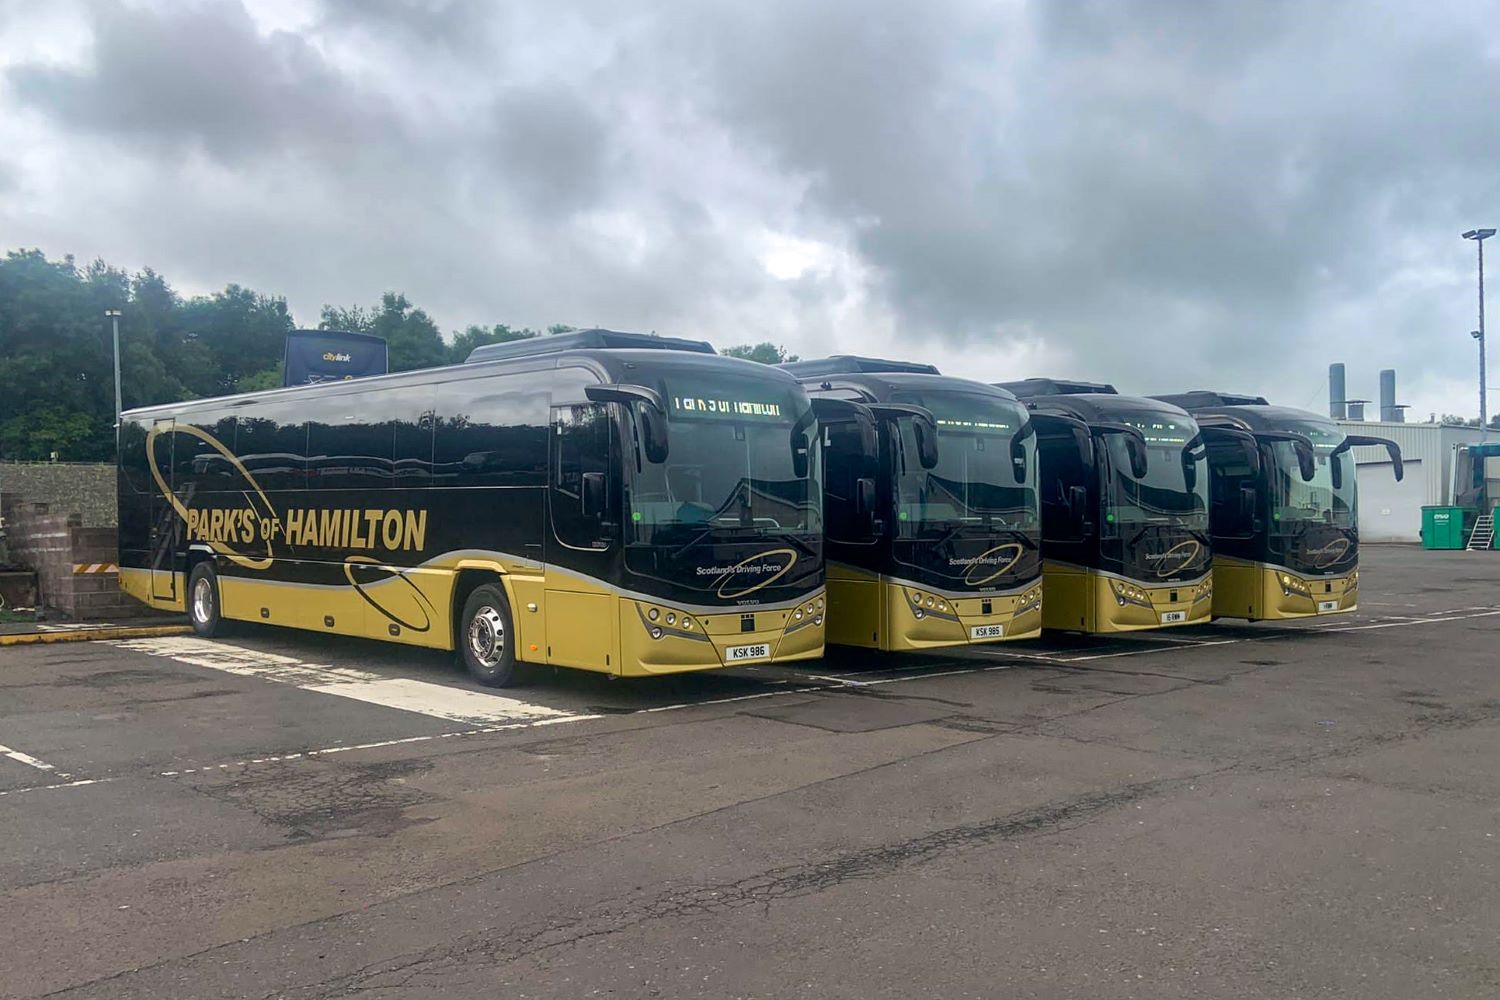 Plaxton Leopard coaches for Park's of Hamilton